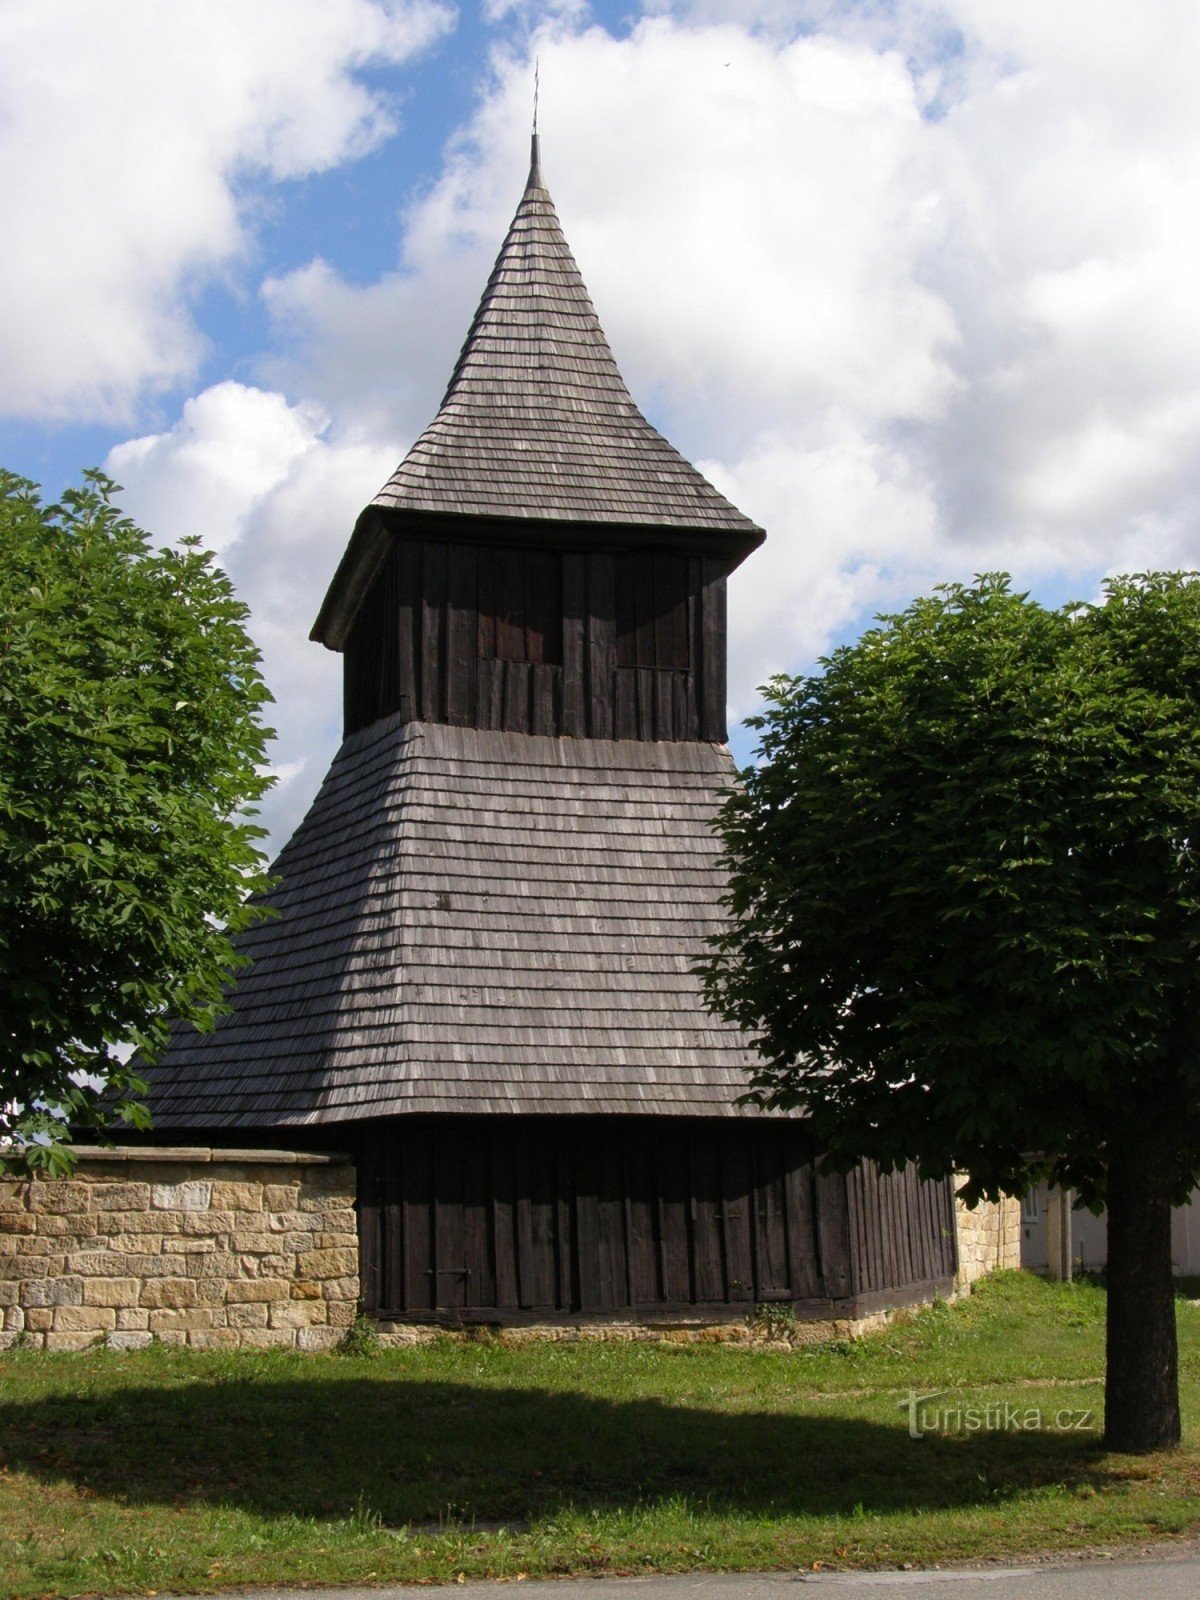 Vysočany - trækirken St. Markeder med et klokketårn